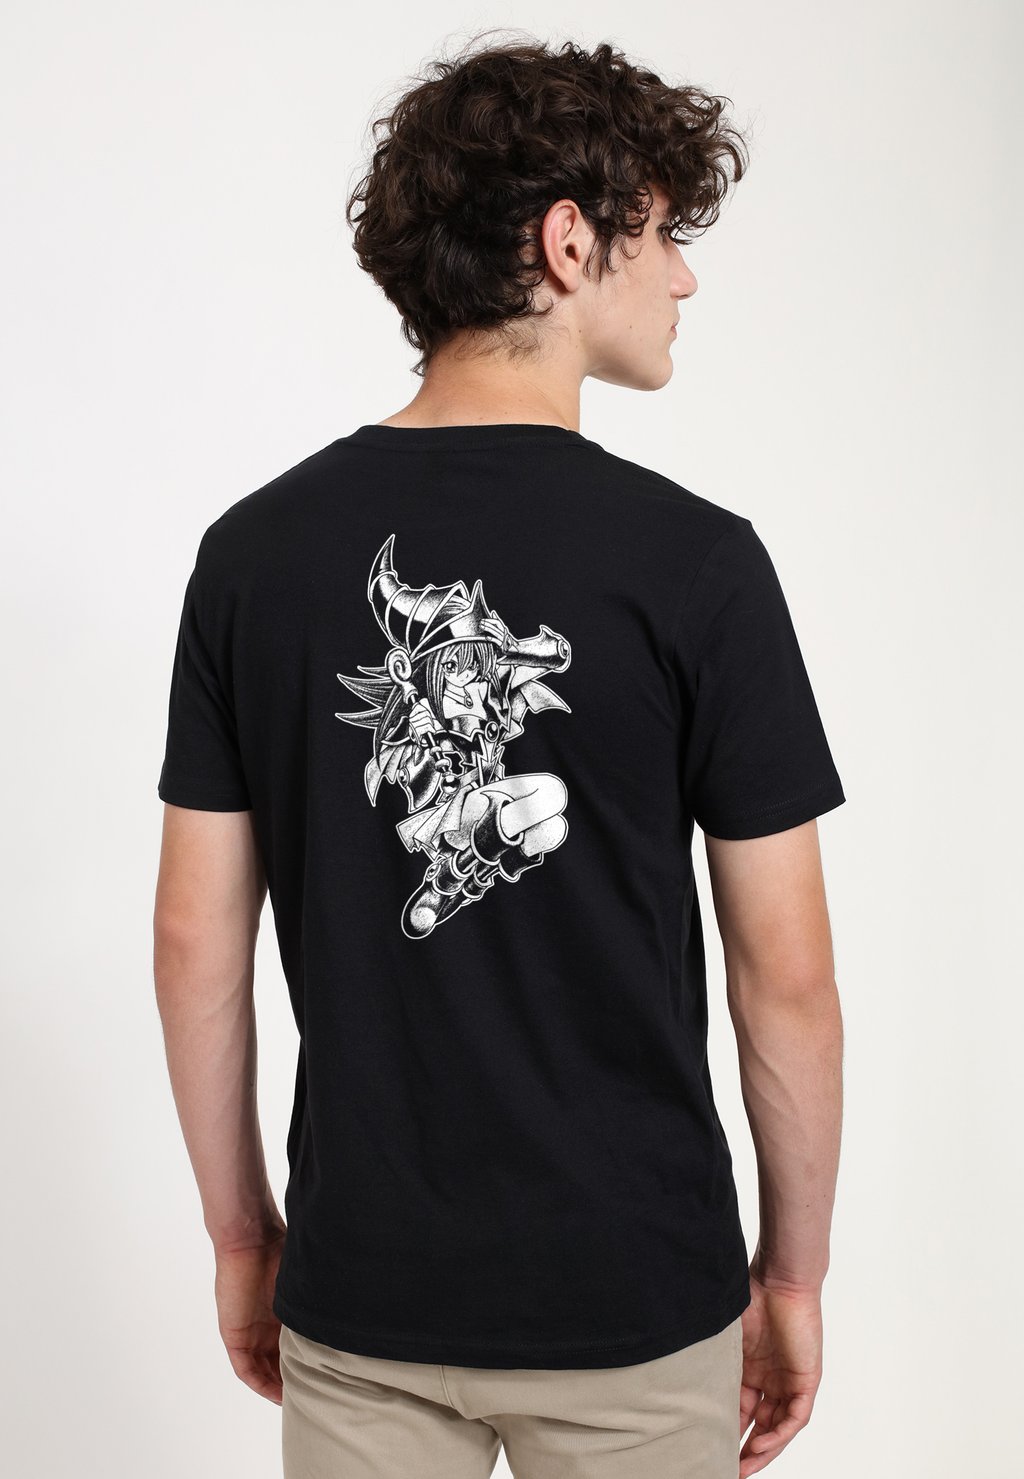 Футболка с принтом Yu-Gi-Oh Dark Magician Mono Henry Tiger, черный футболка dark magician yu gi oh мужская винтажная футболка в стиле хип хоп оверсайз y2k футболки для женщин уличная одежда футболки 100% хлопок